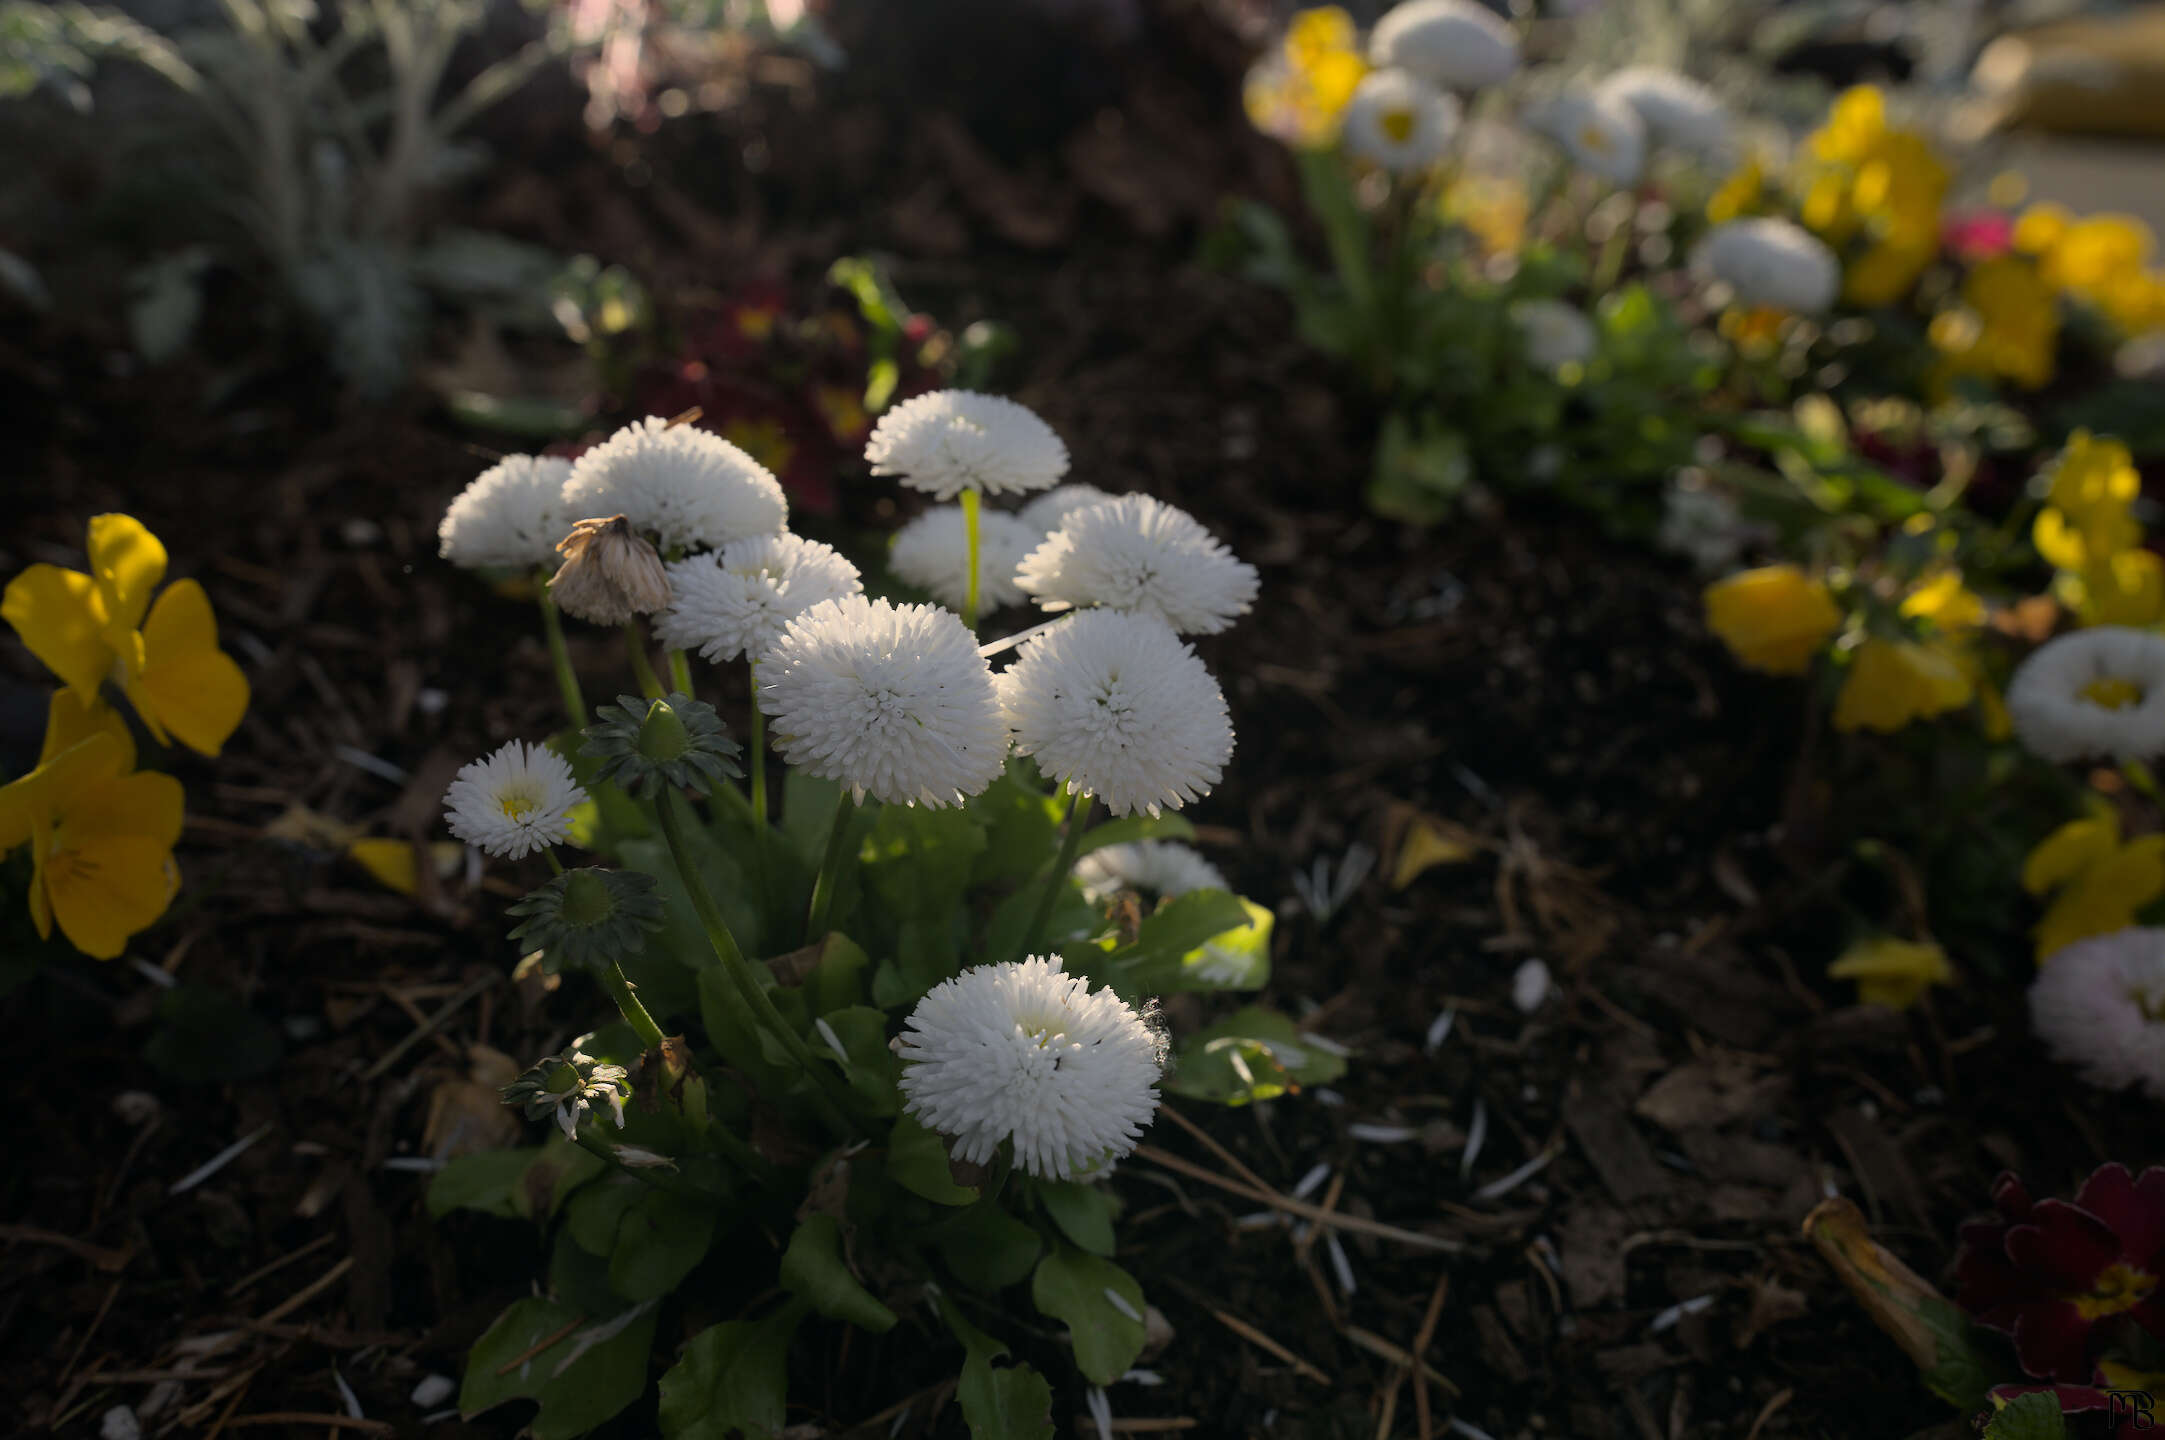 White flower in garden bed